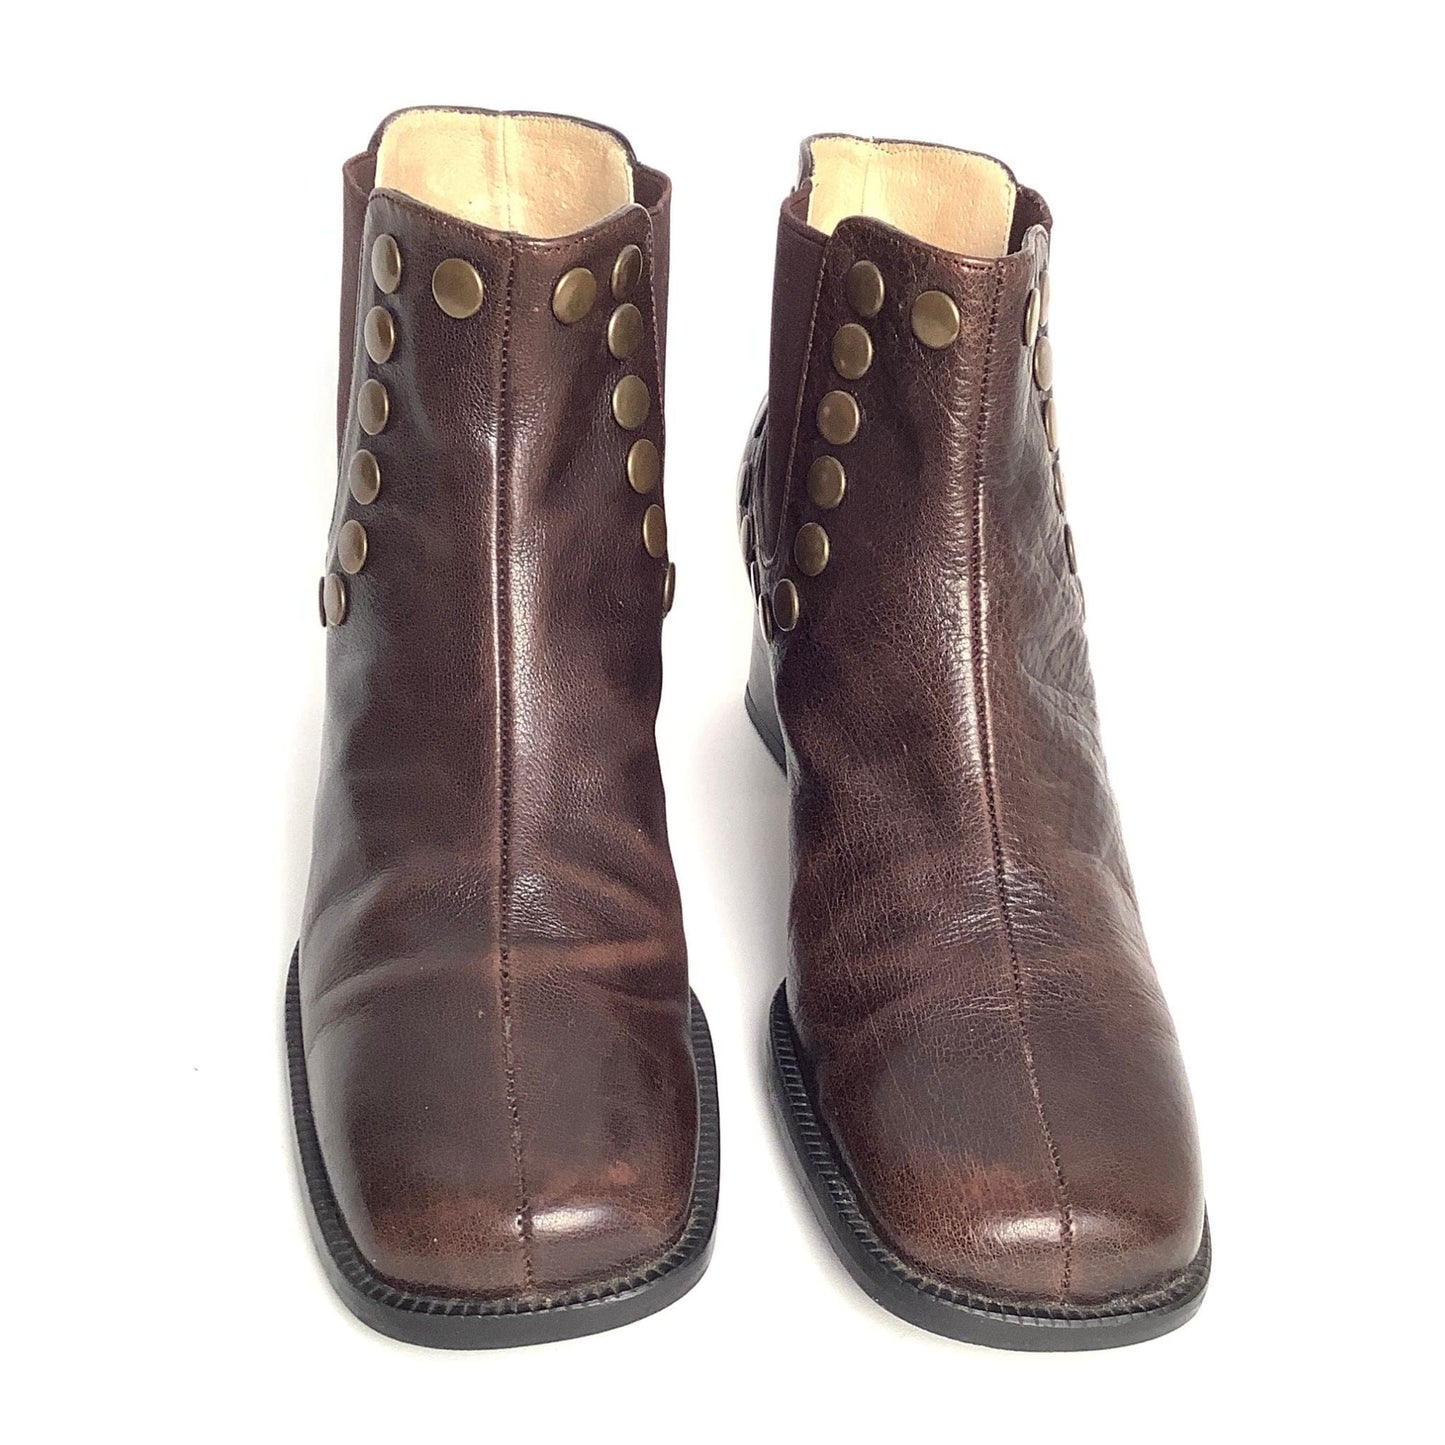 Vintage Studded Ankle Boots 7 / Brown / Vintage 1970s